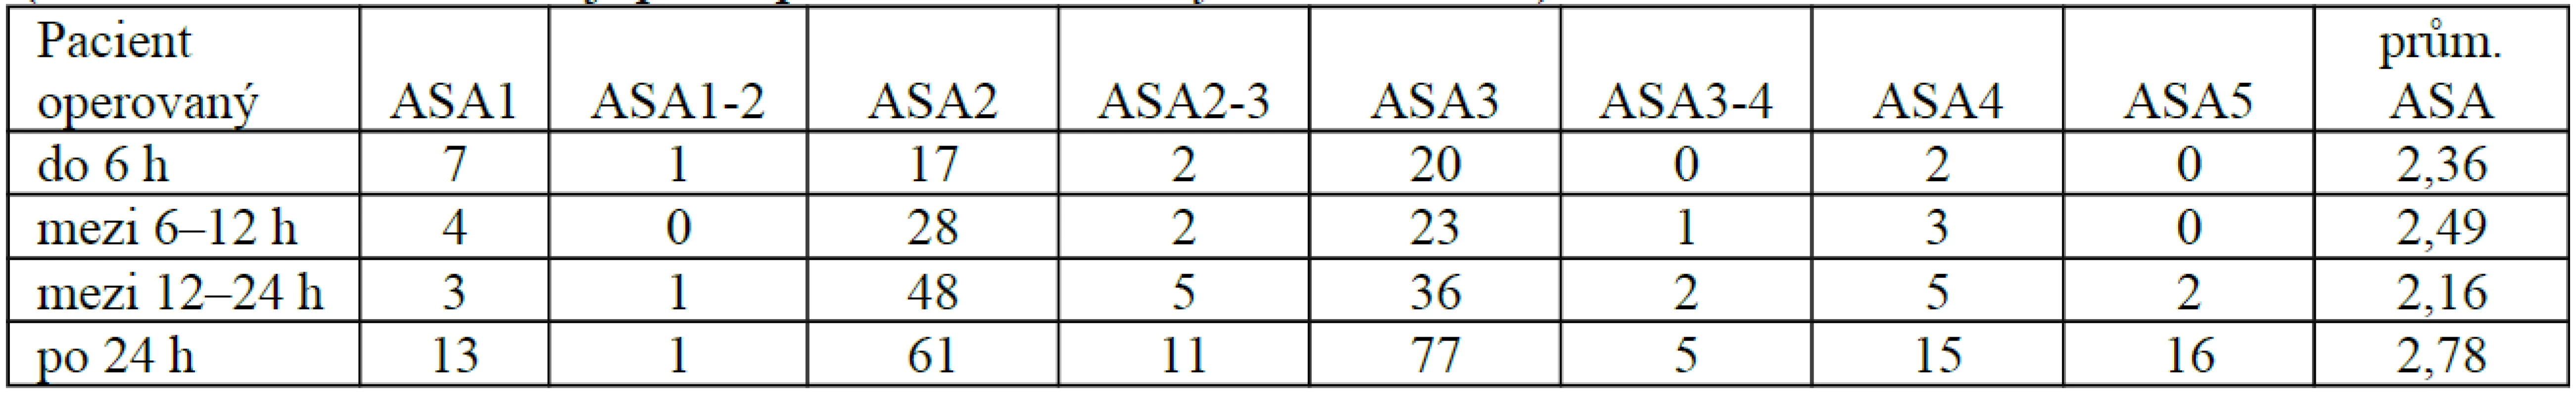 ASA skóre u pacientů v jednotlivých skupinách
(čísla v tabulce znamenají počet pacientů s uvedeným ASA skóre)